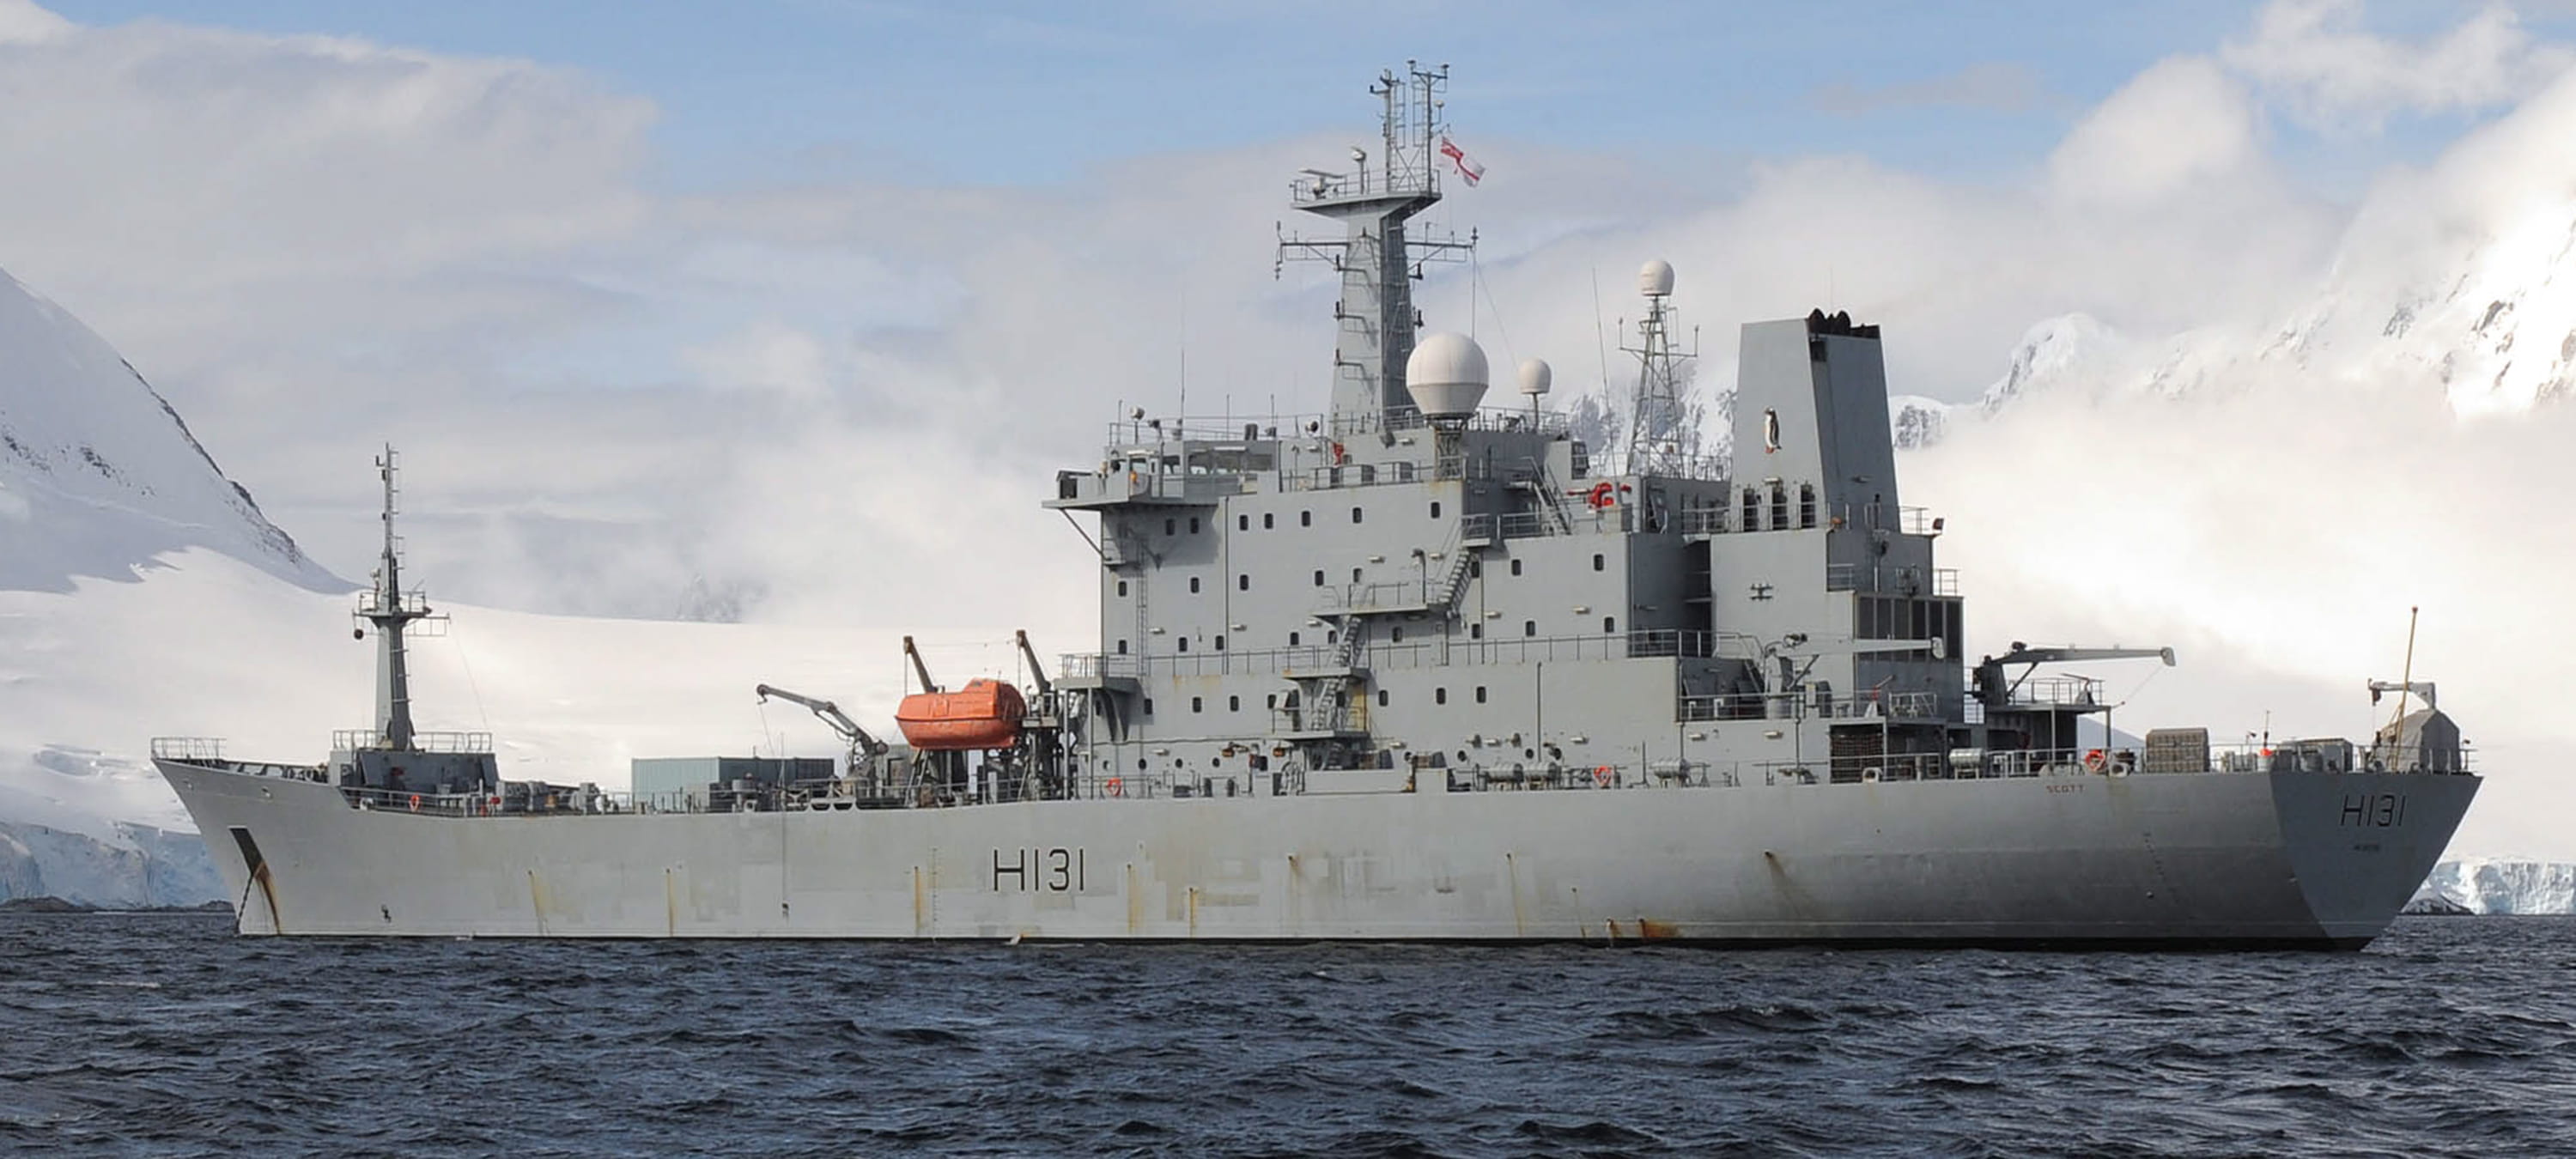 Royal Navy ship, HMS Scott at sea in Antarctica